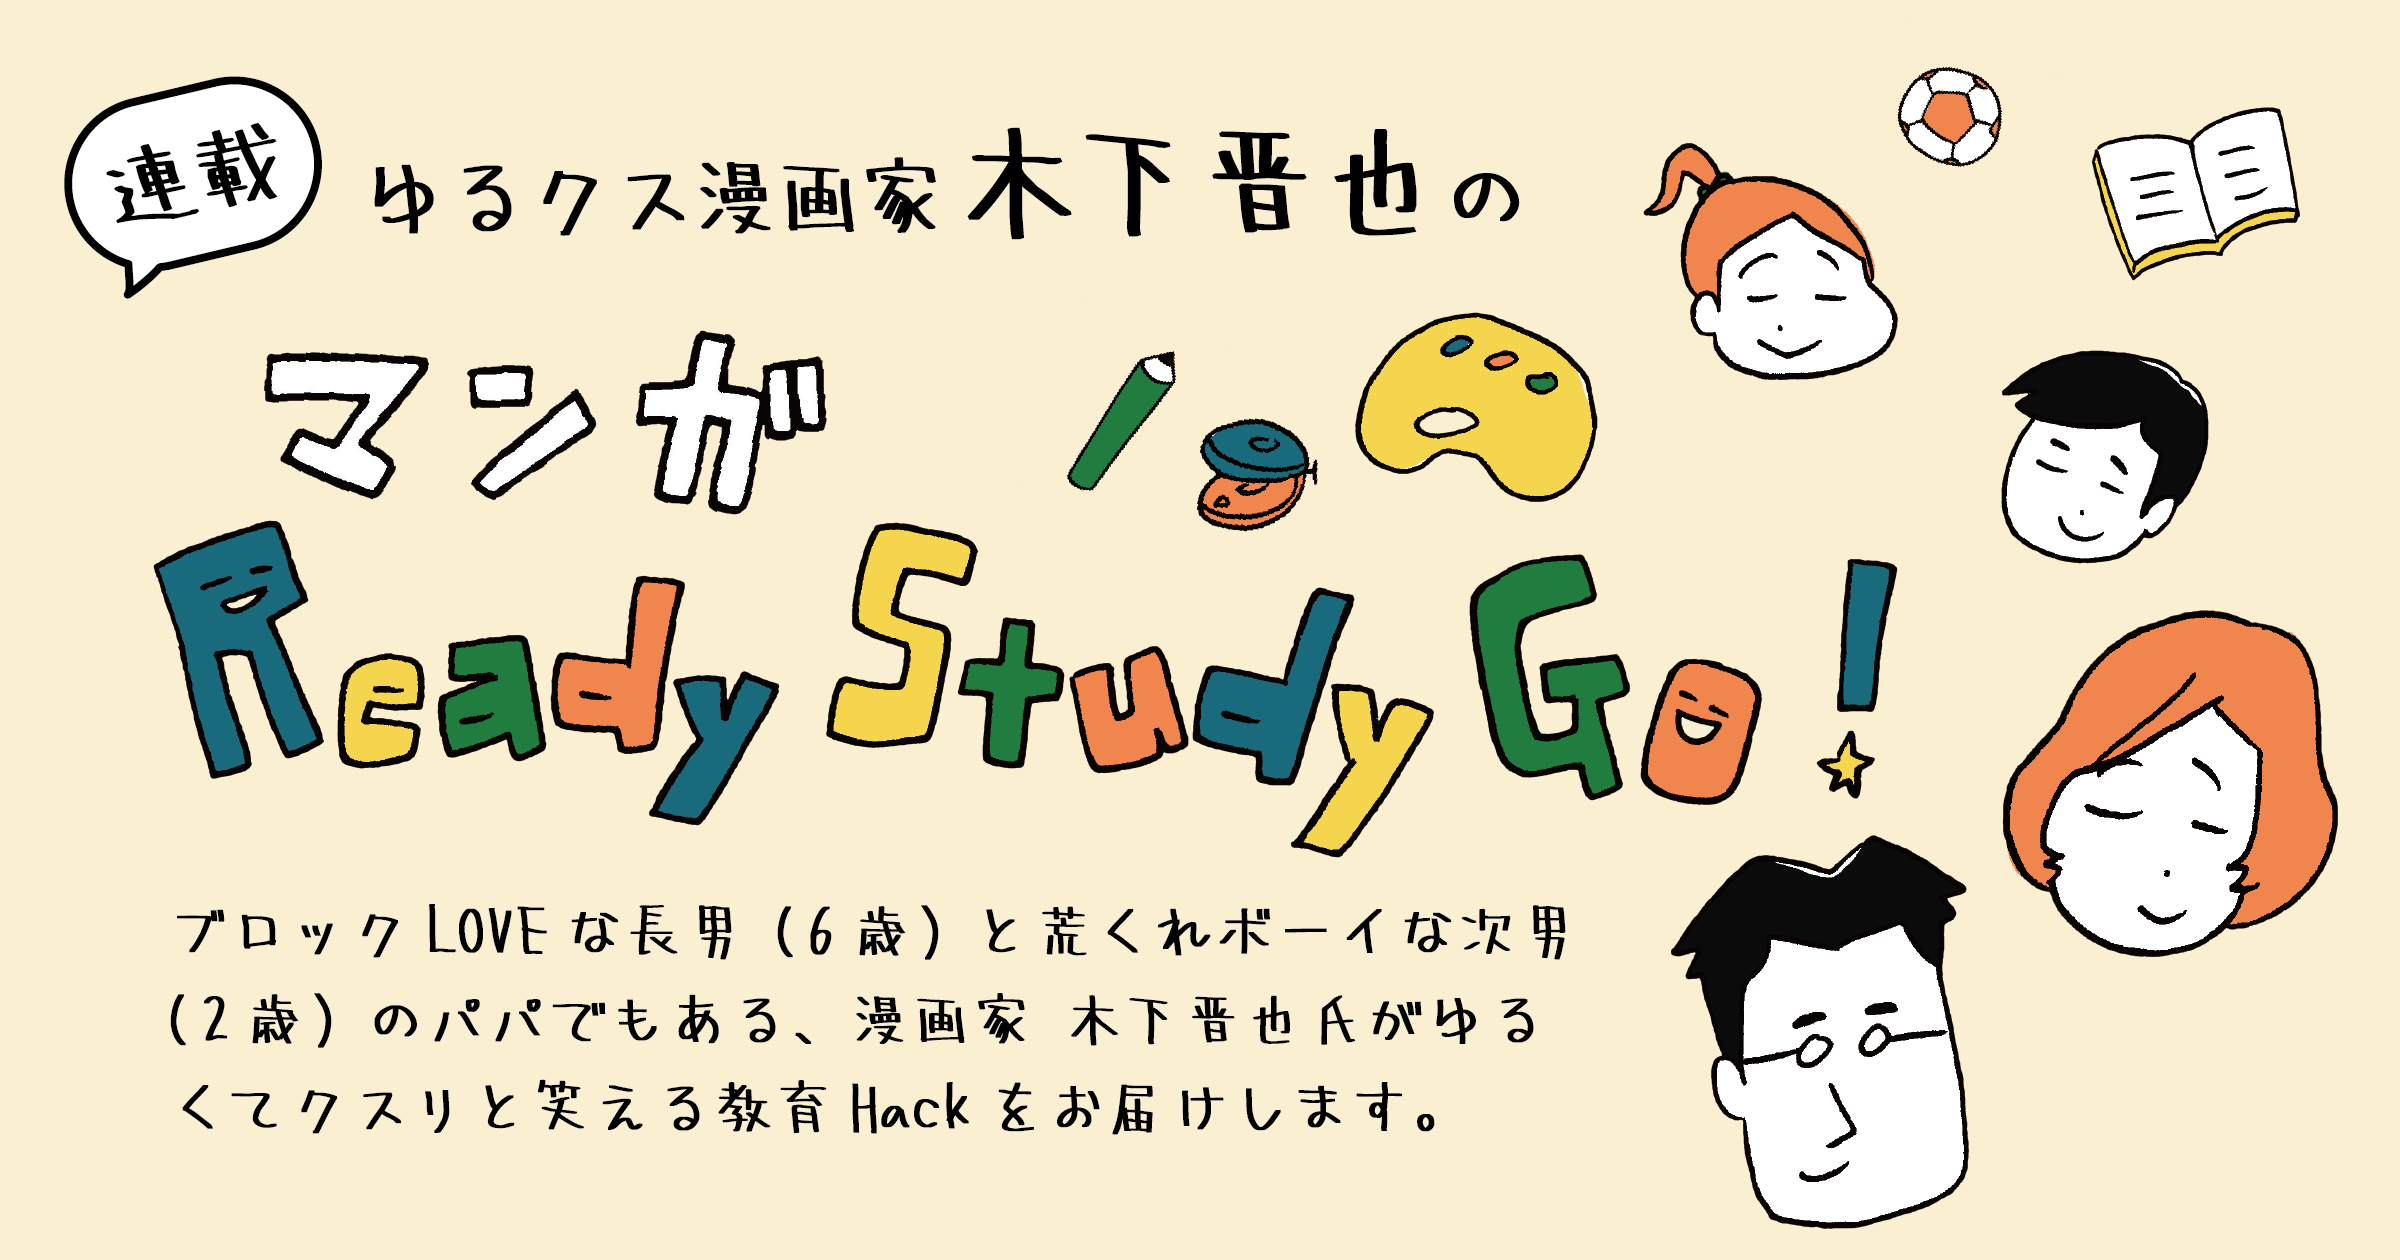 「プログラミング教育の必修化に向けて」ゆるクス漫画家 木下晋也のマンガ Ready Study Go!【第1回】